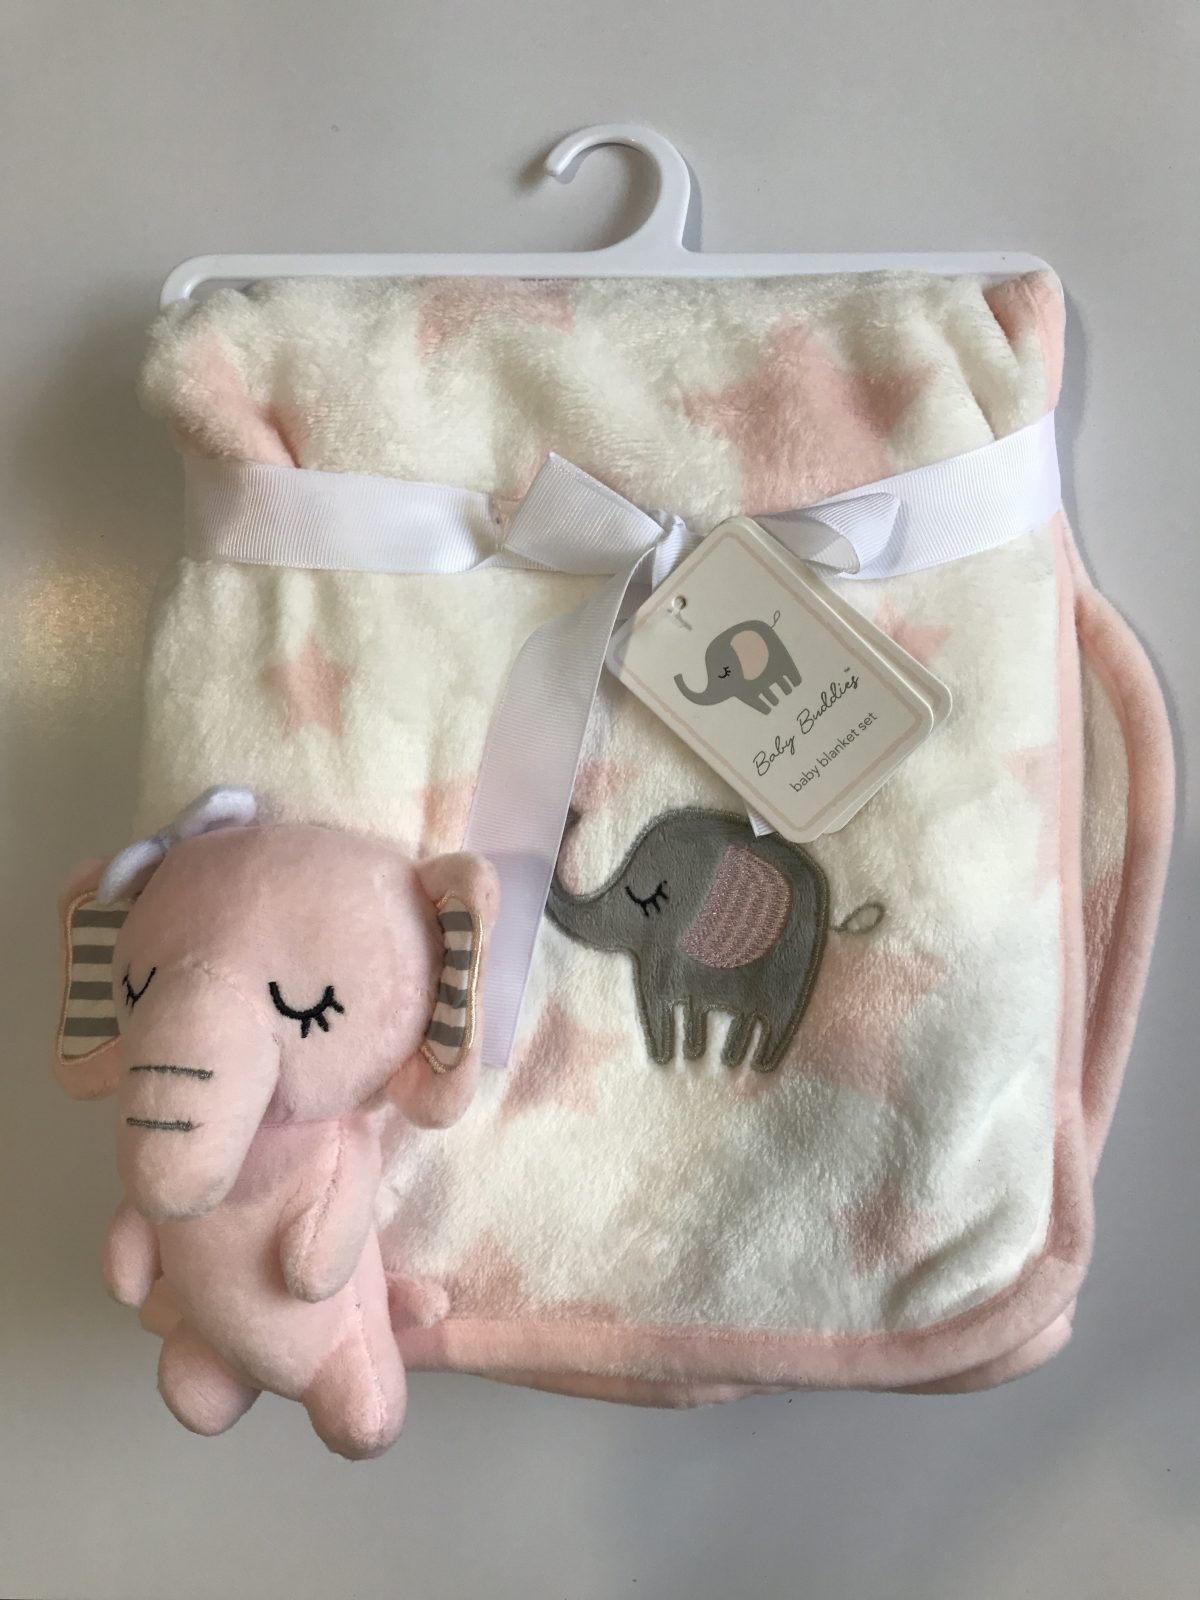 پتو نوزادی با عروسک متصل طرح فیل صورتی